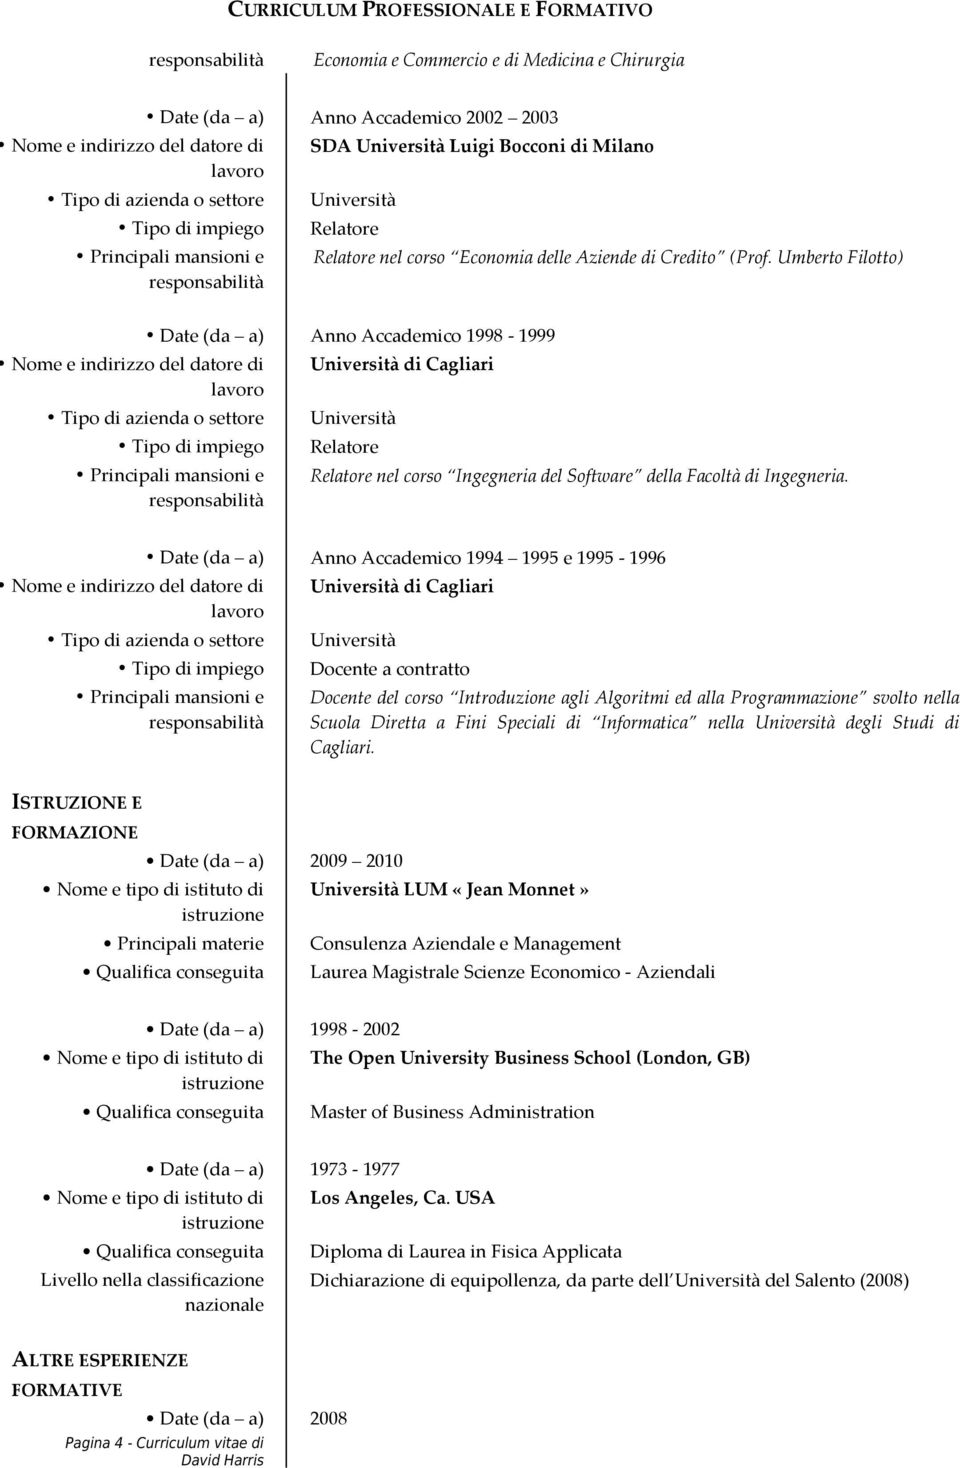 Date (da a) Anno Accademico 1994 1995 e 1995-1996 di Cagliari Docente a contratto Docente del corso Introduzione agli Algoritmi ed alla Programmazione svolto nella Scuola Diretta a Fini Speciali di